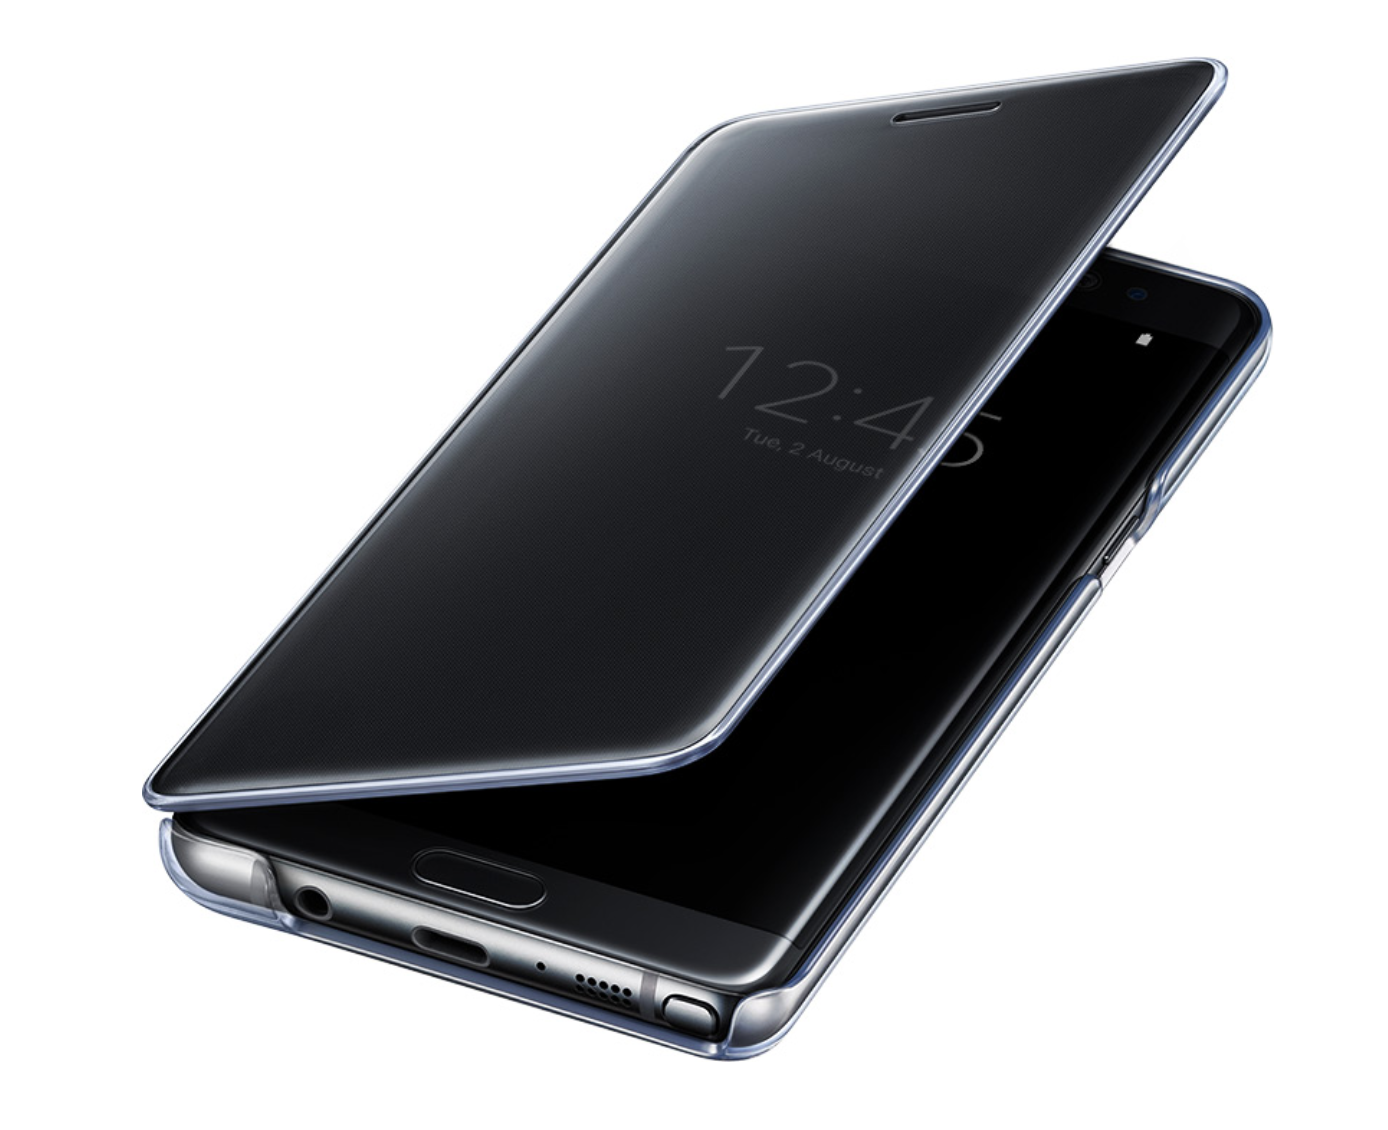 Aparecen más accesorios para Samsung Galaxy Note 7